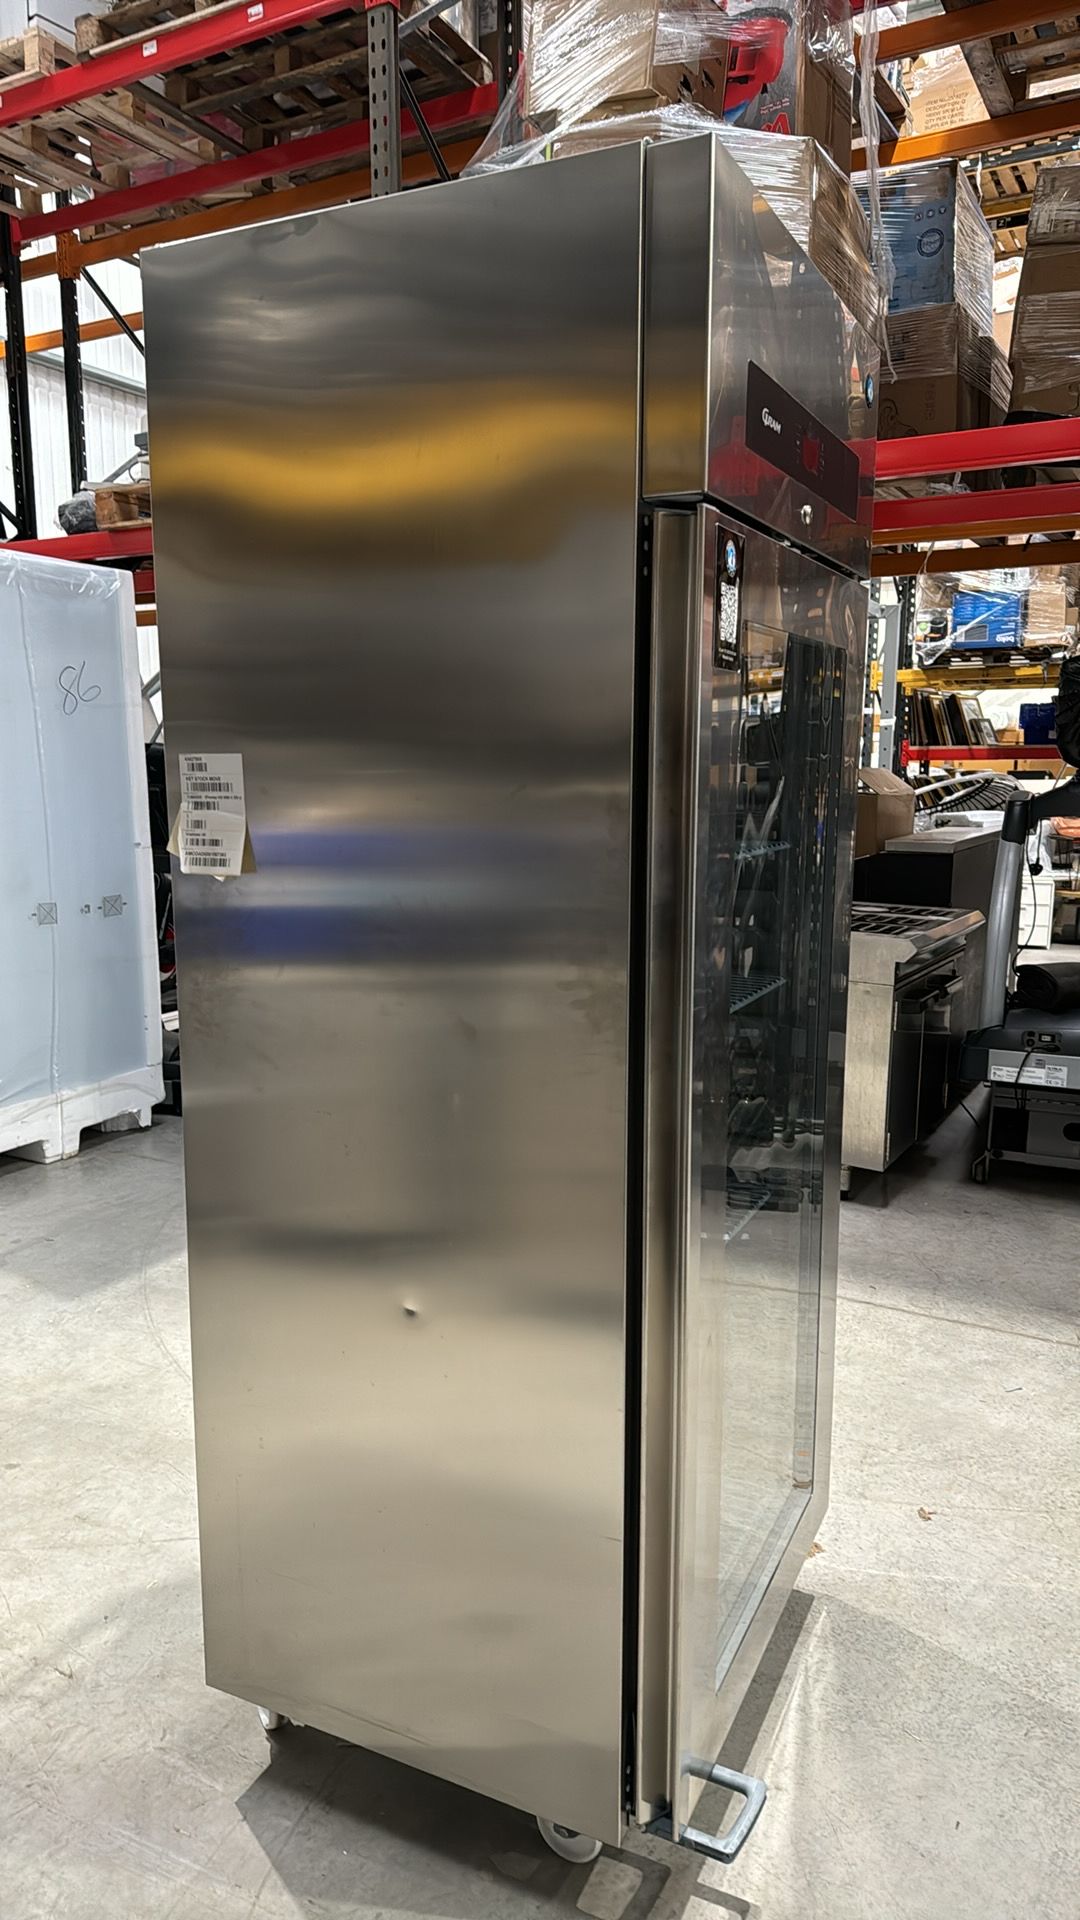 Premier KG W80 C DR U Refrigerator - Image 3 of 6